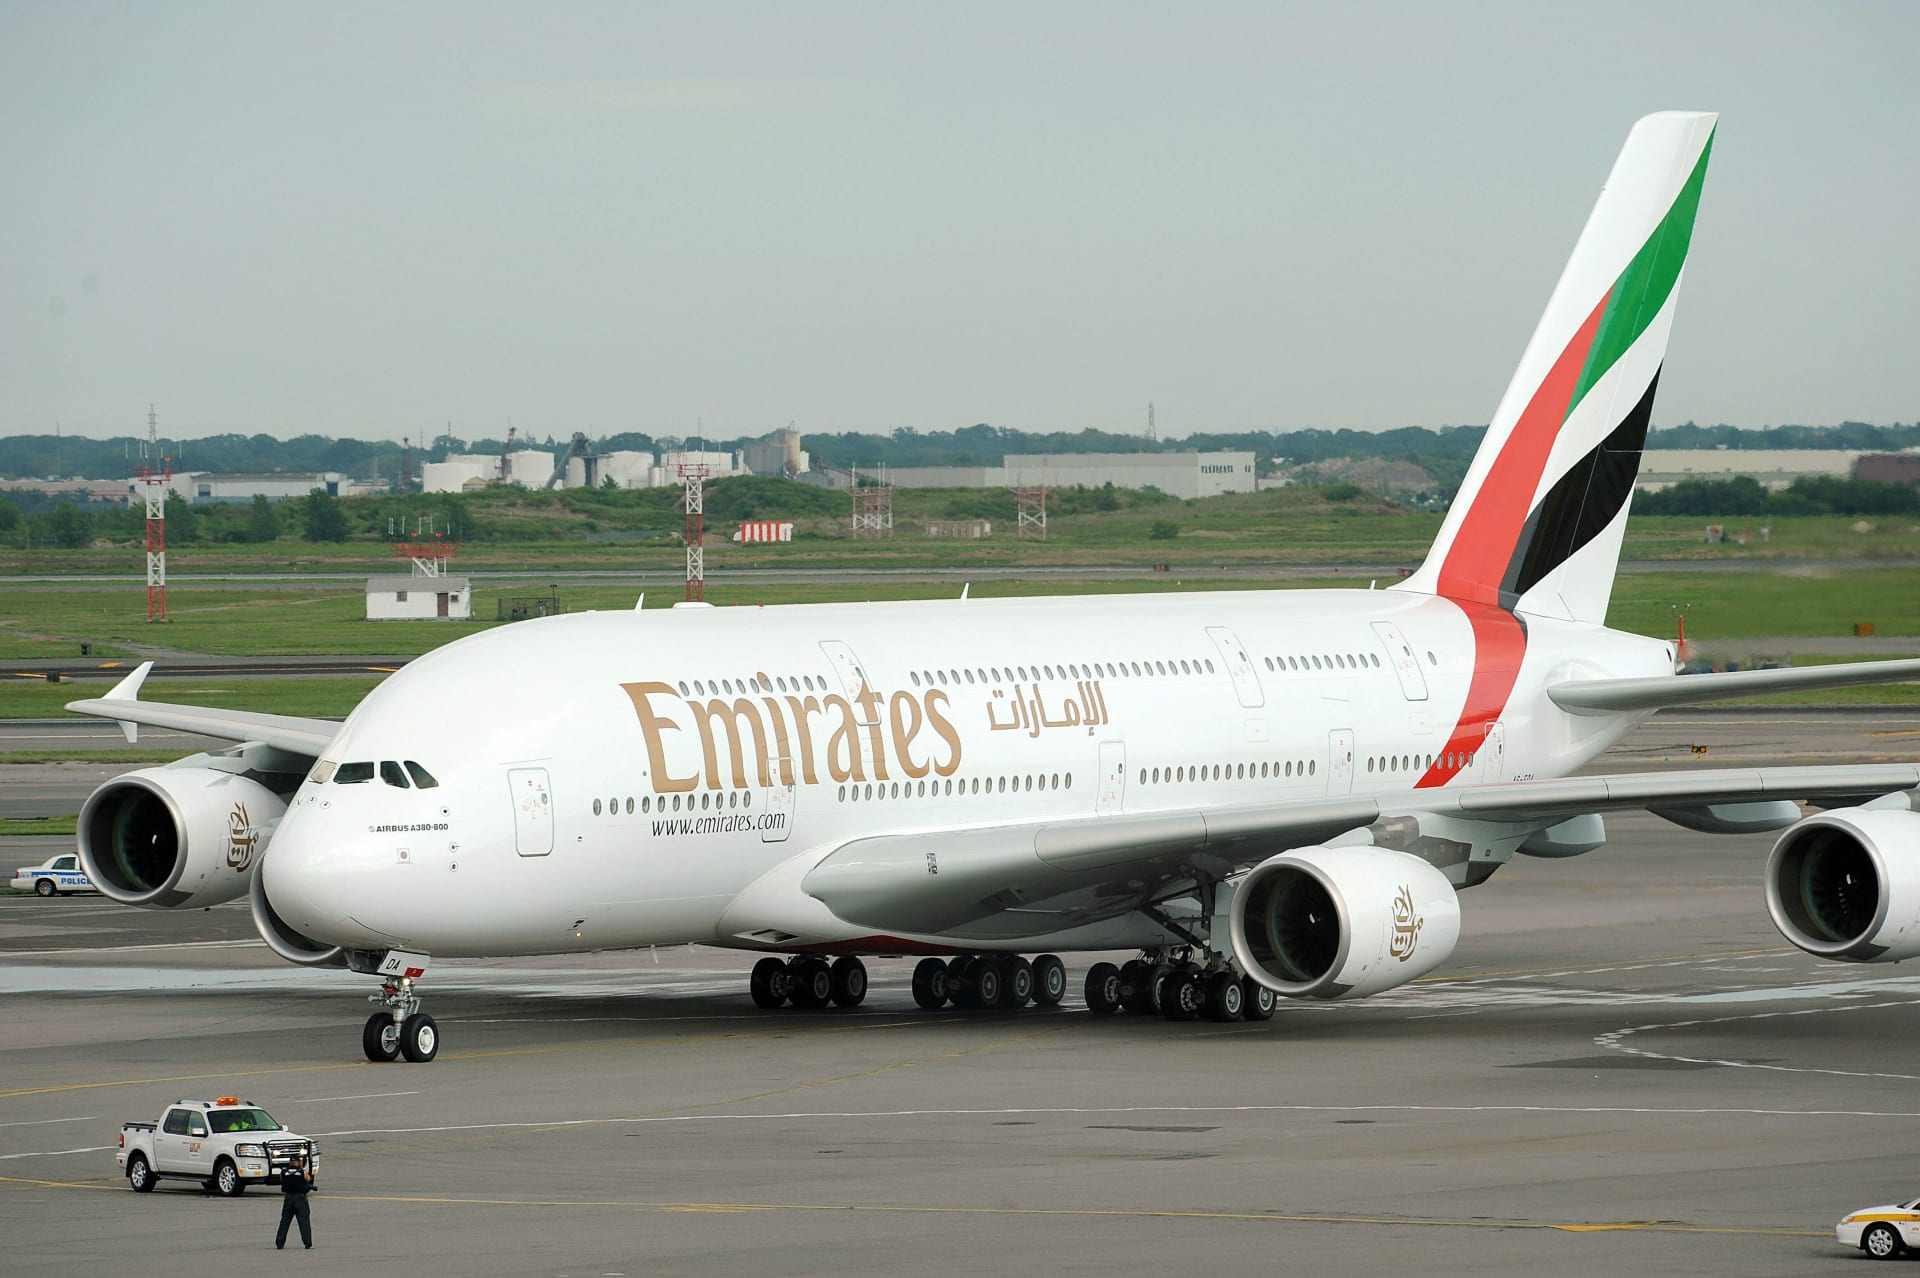 طيران الإمارات يفوز بجائزة "TripAdvisor" لأفضل طيران في العالم 